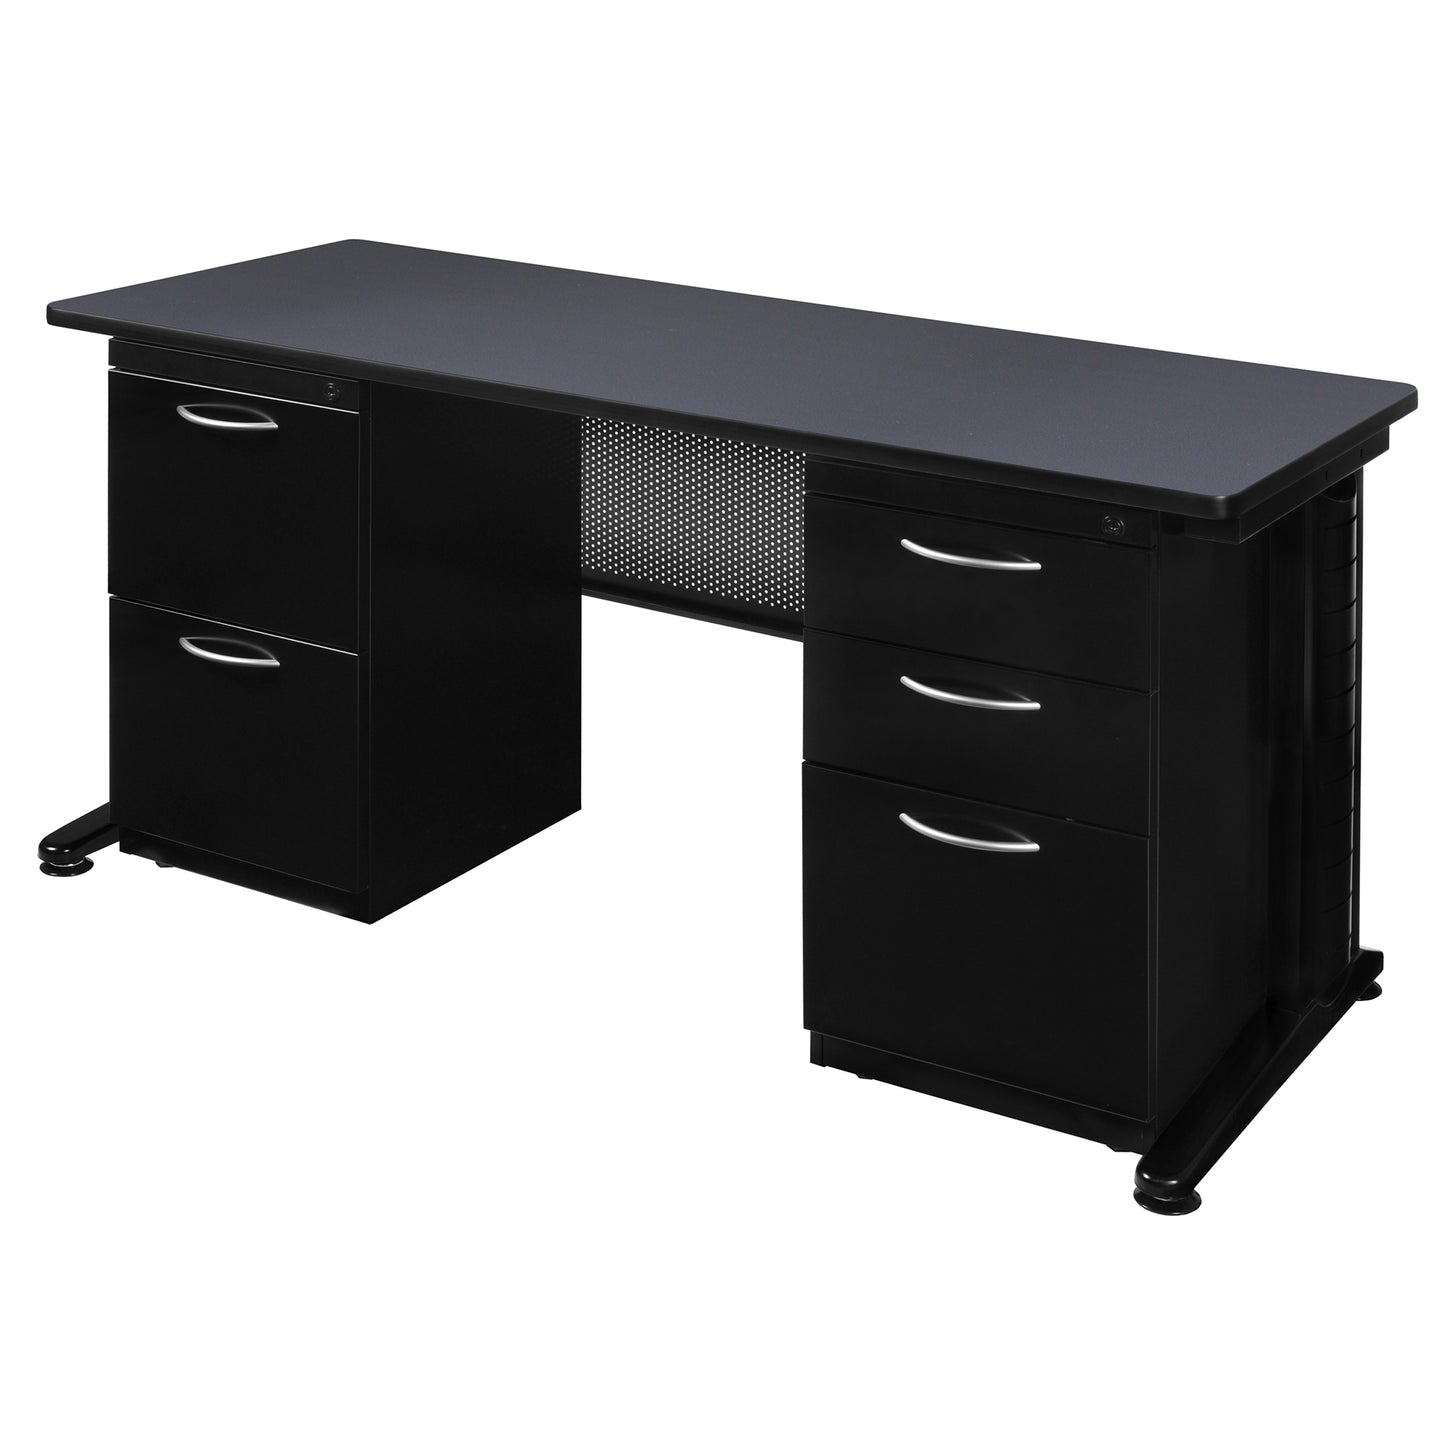 Regency Fusion 72" x 24" Teachers Desk with Double Pedestal Drawer Unit